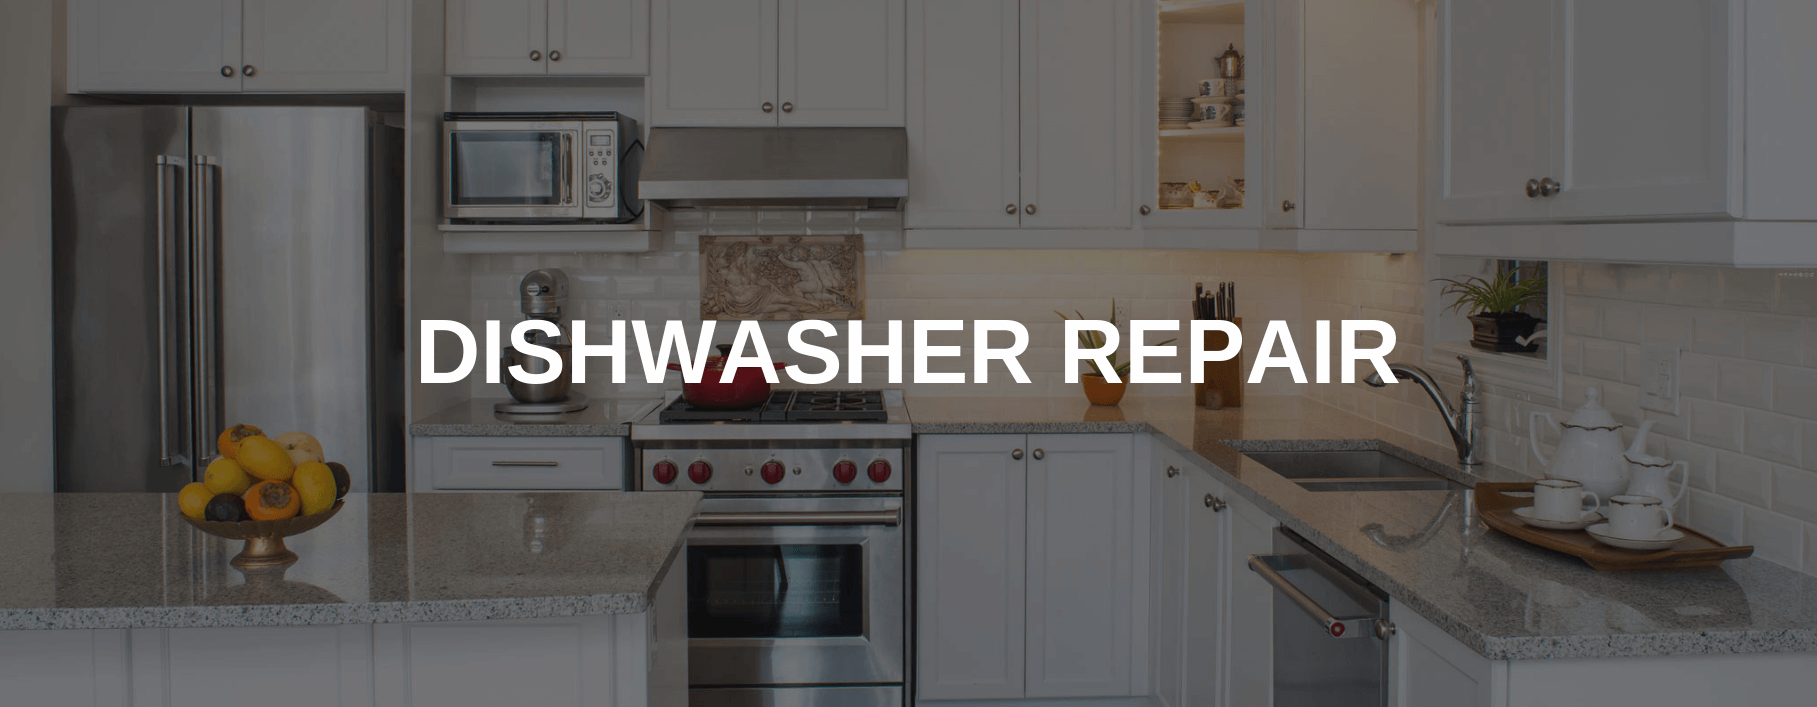 dishwasher repair irving